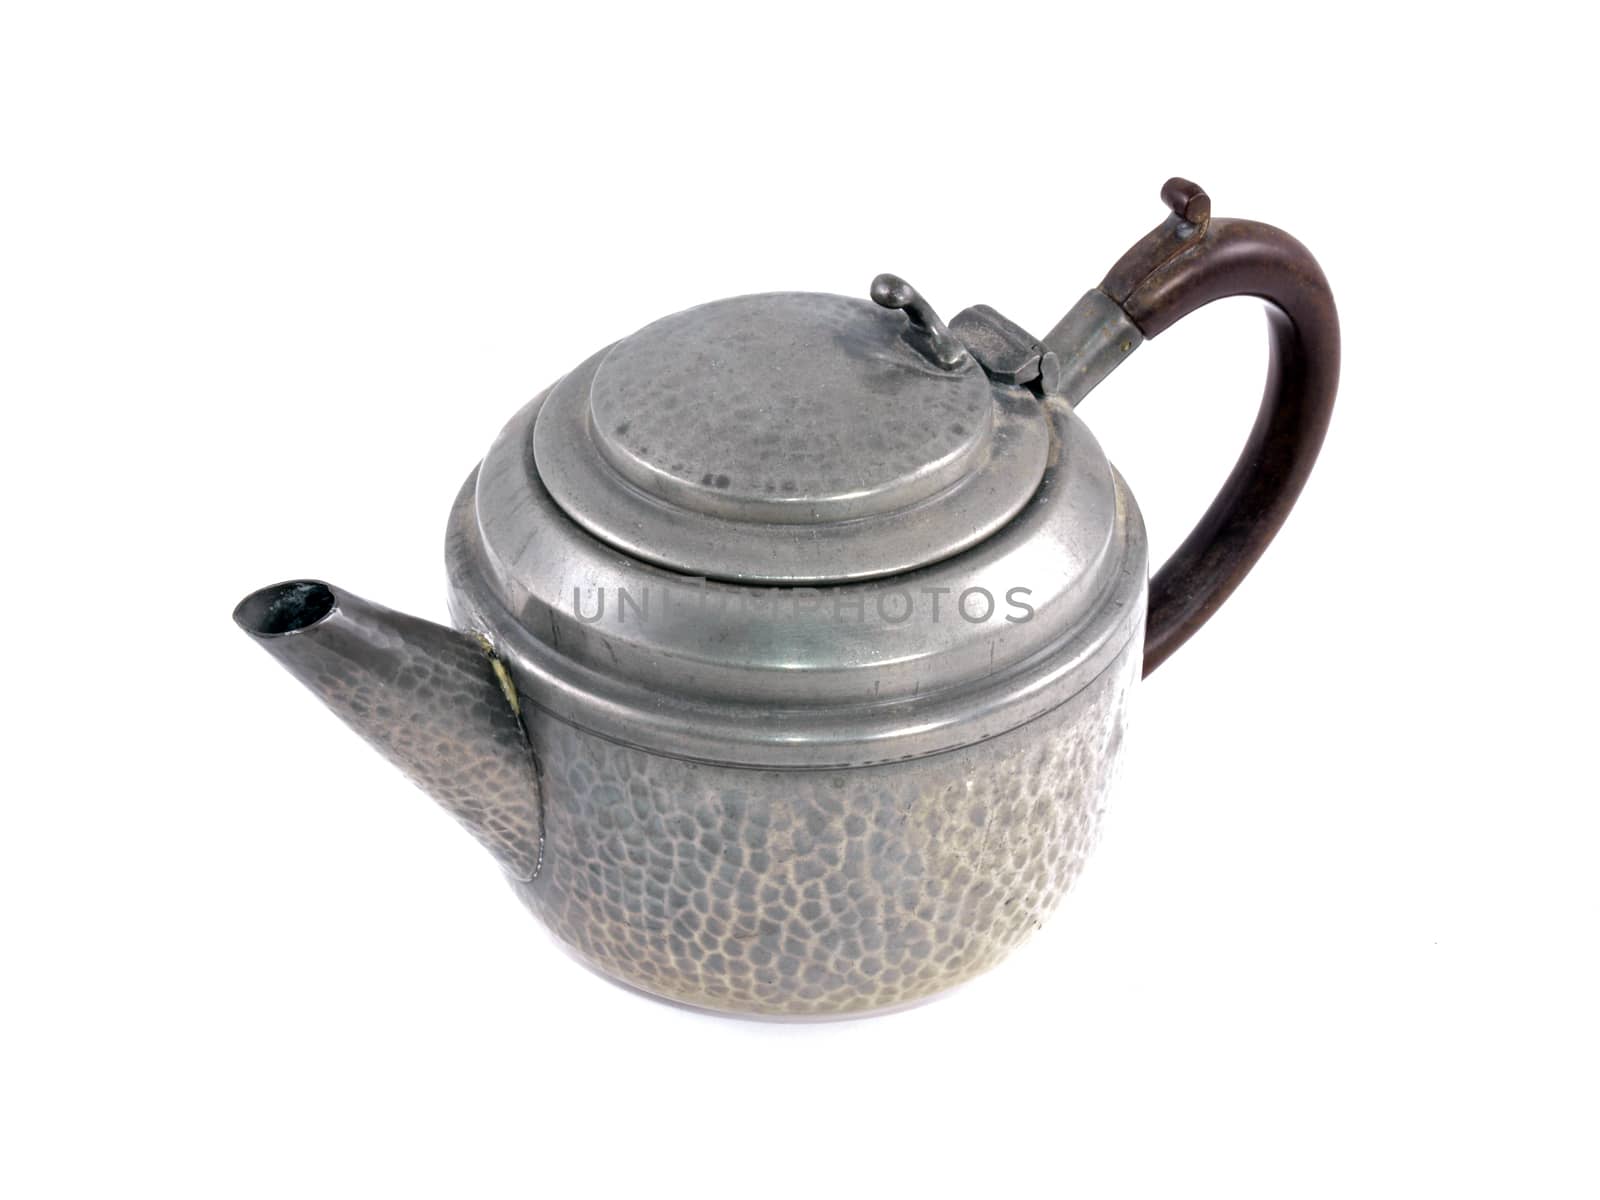 Pewter tea pot on a white background.